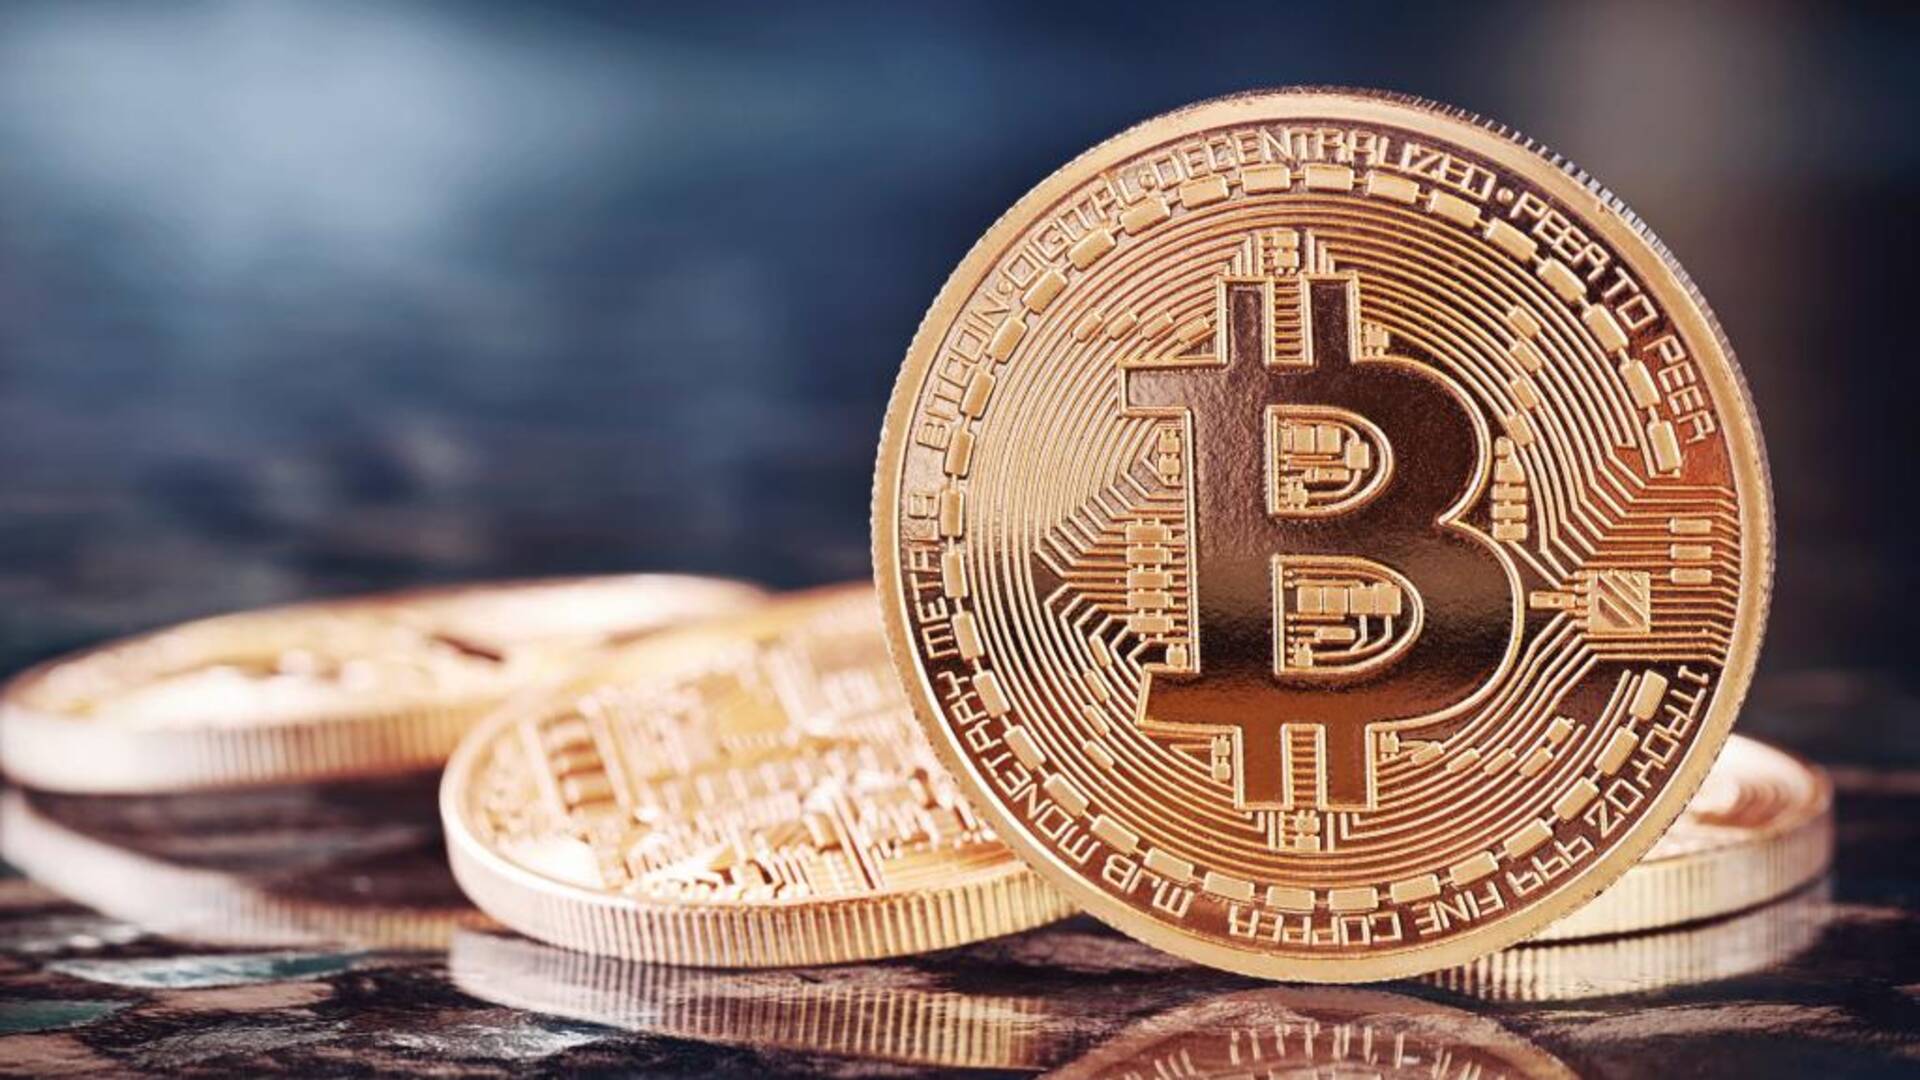 Michael Saylor prevede che Bitcoin raggiungerà $5 milioni. Scopri i 3 motivi dietro questa previsione